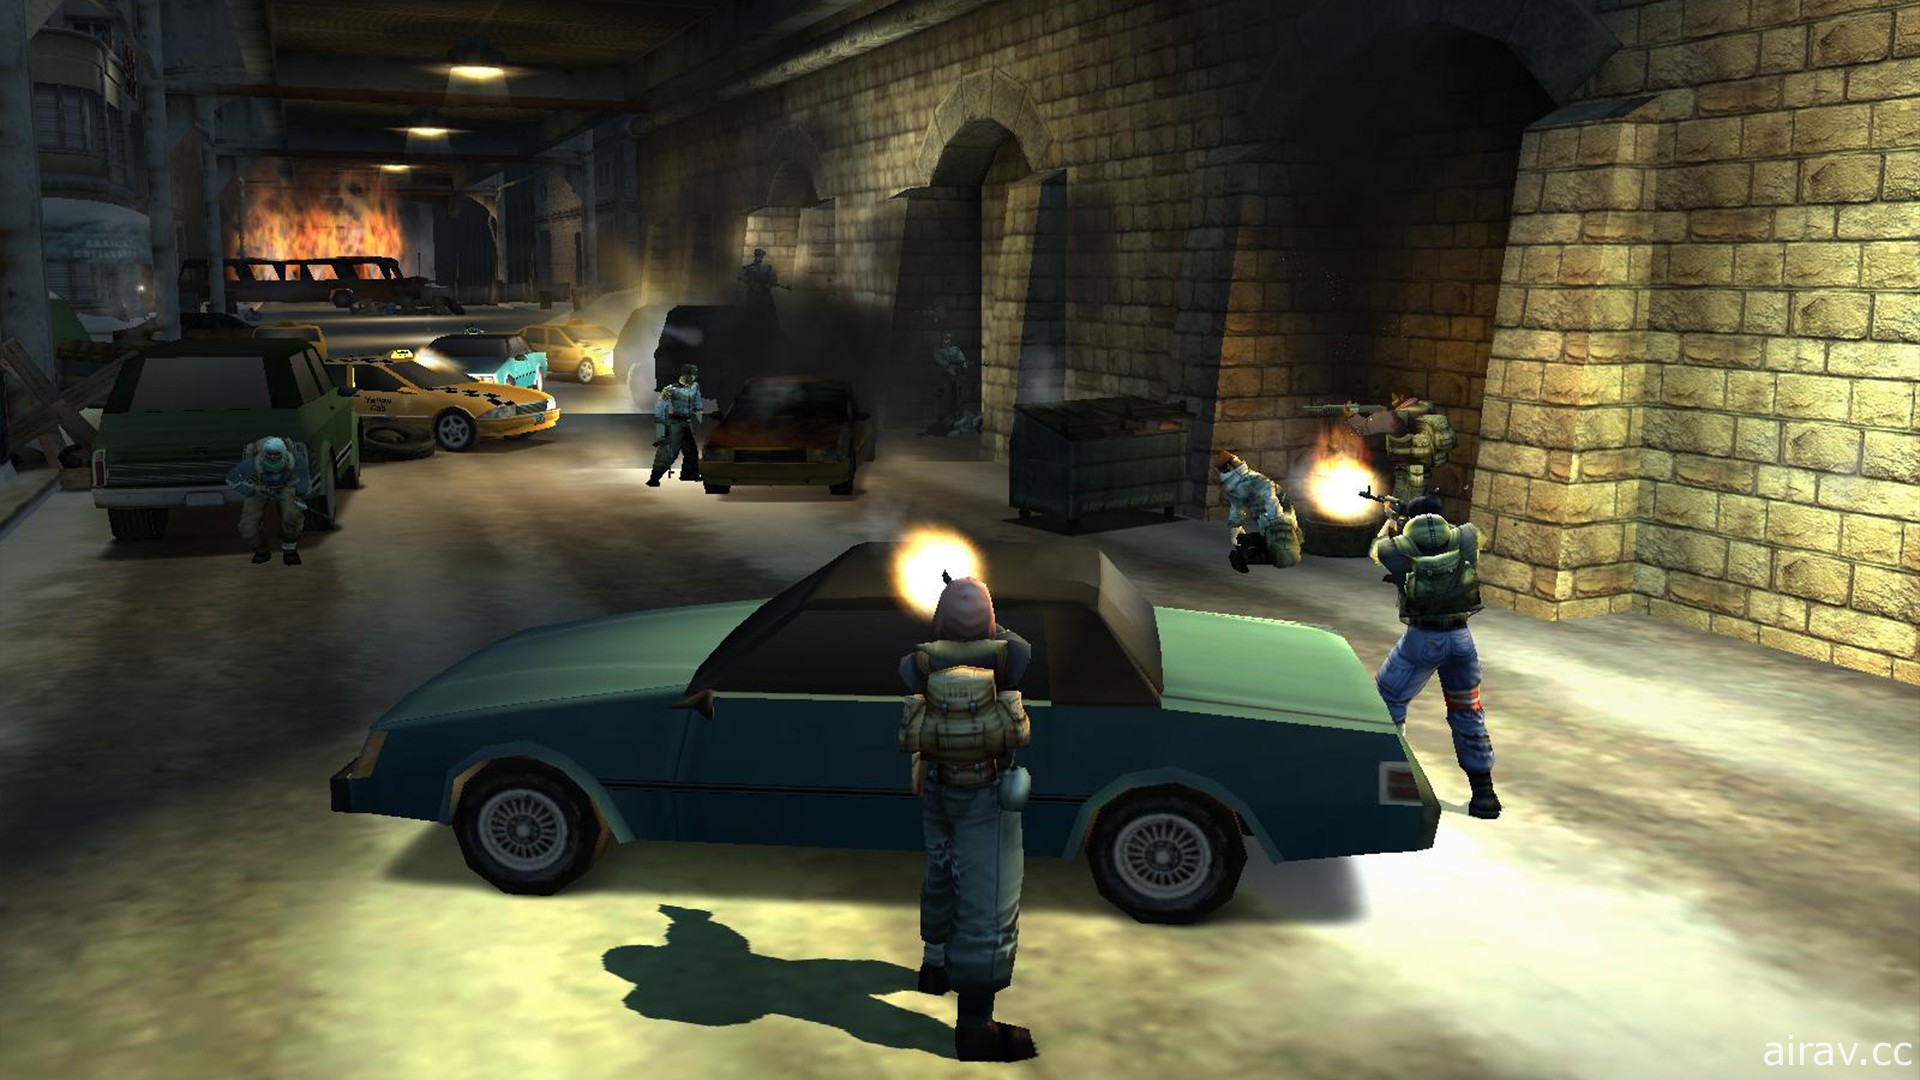 知名射击游戏《自由战士 Freedom Fighters》相隔 17 年以 PC 数位版形式再度登场